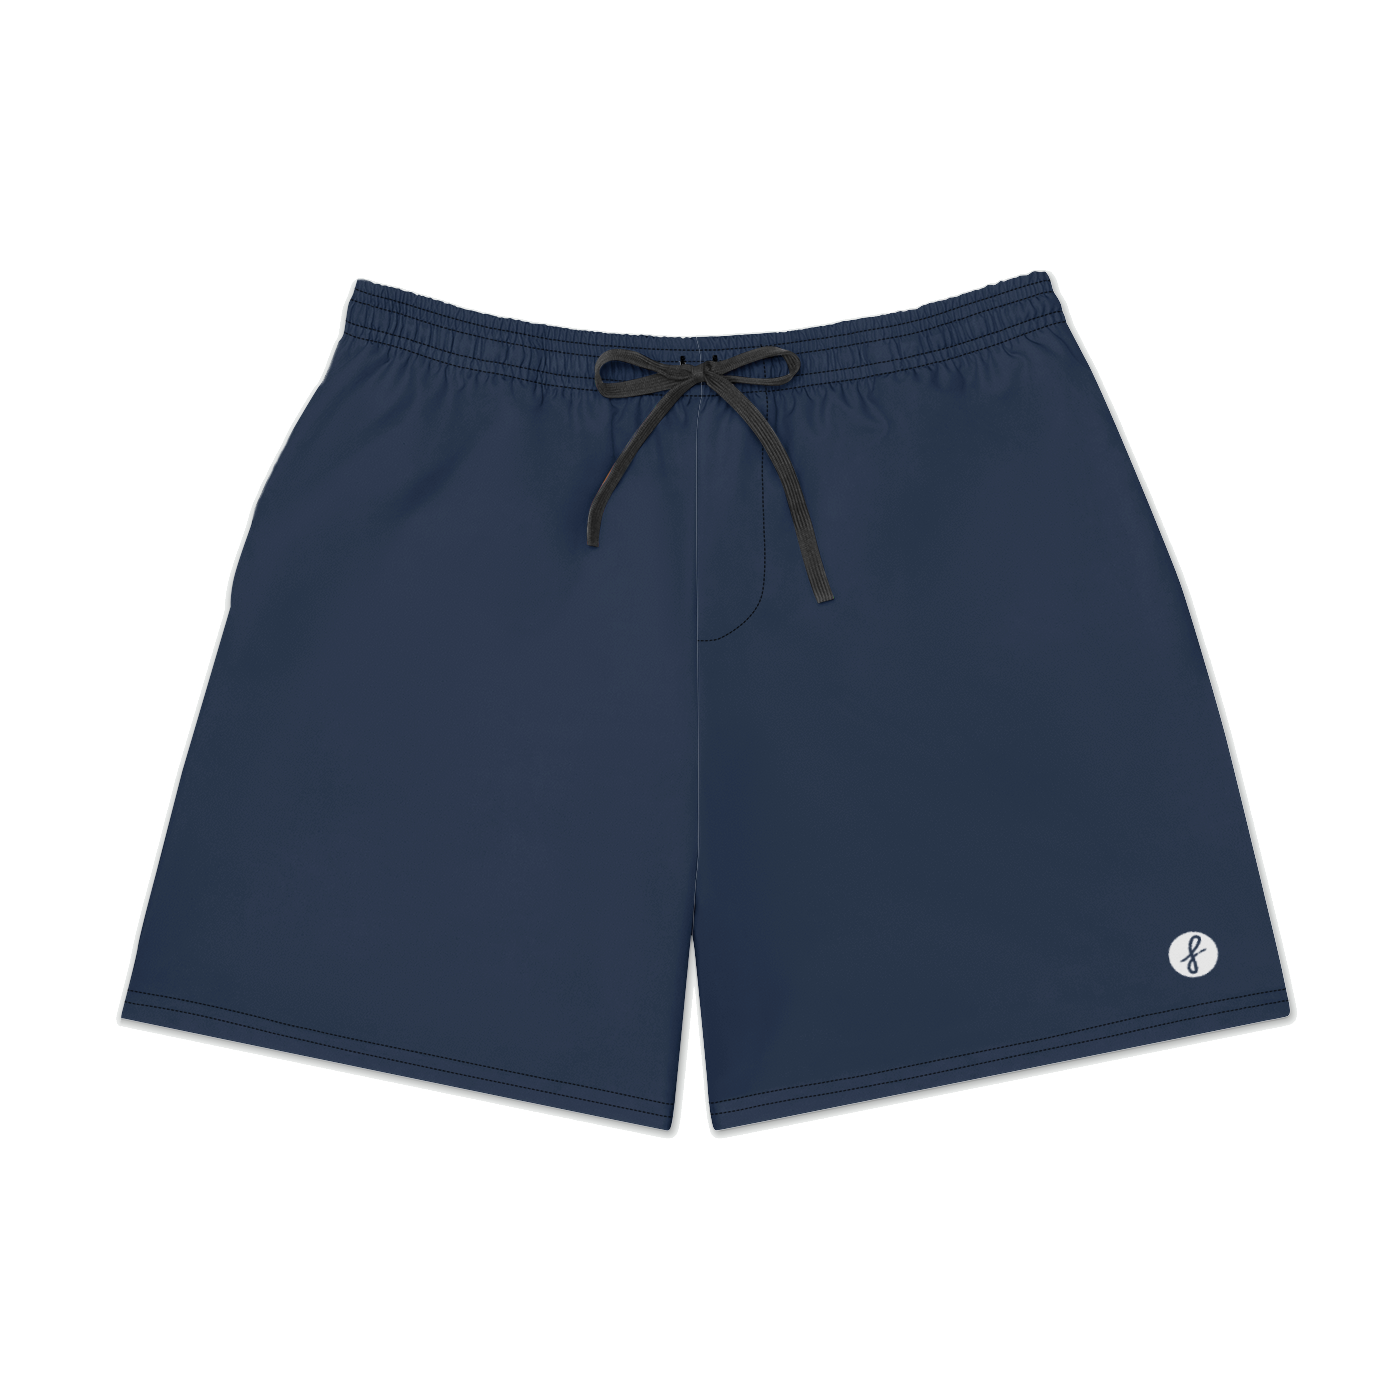 Navy Blue Hybrid Shorts